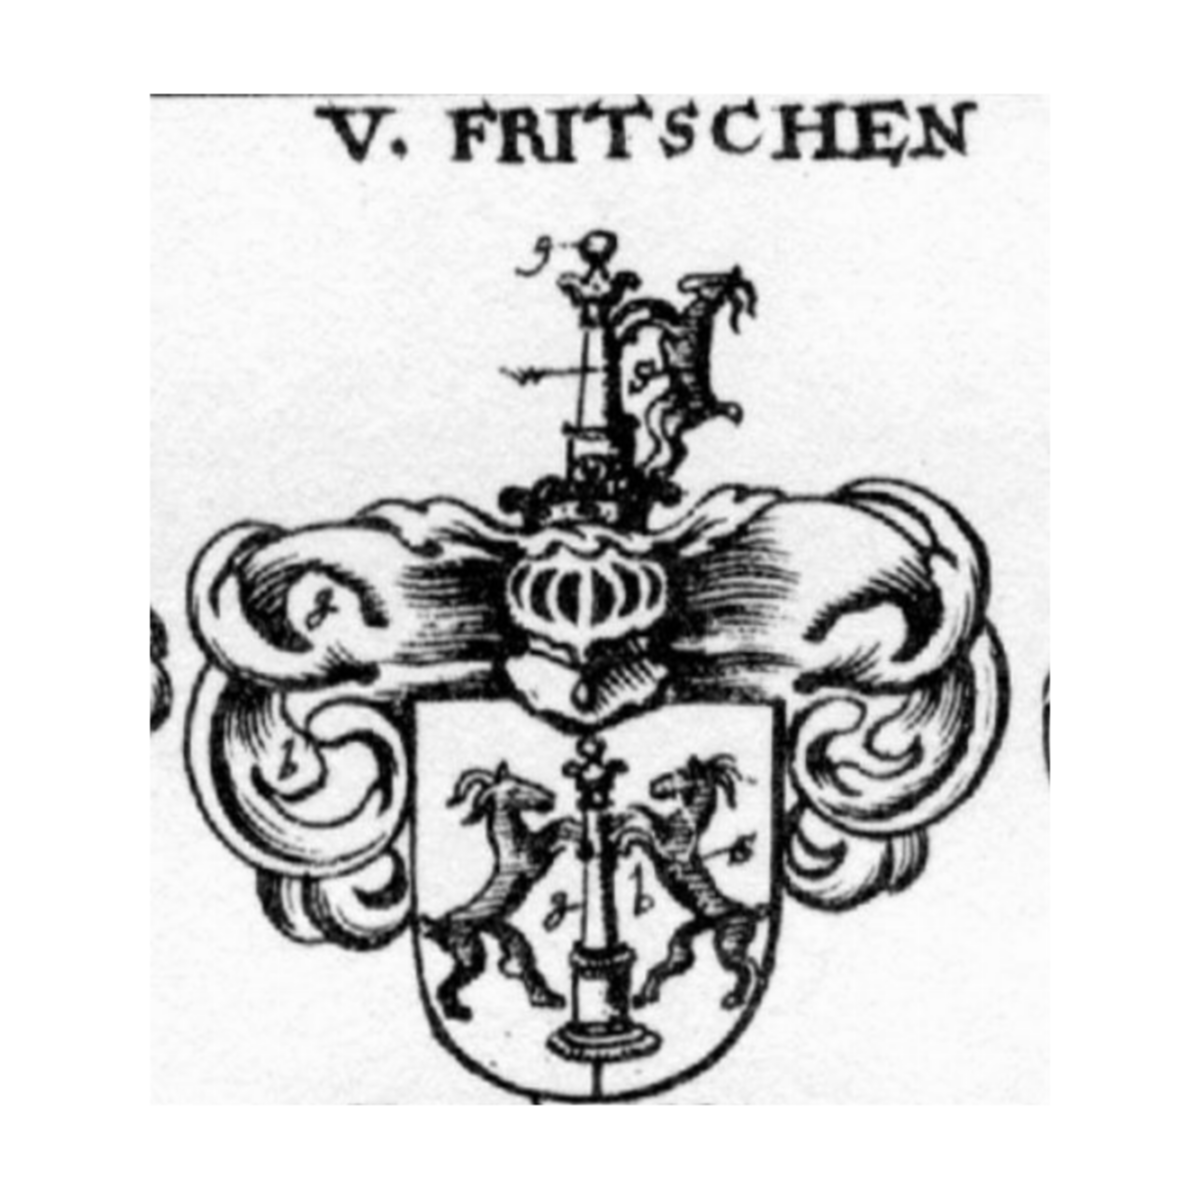 Stemma della famigliaFritschen, Fritschen,Fritscher